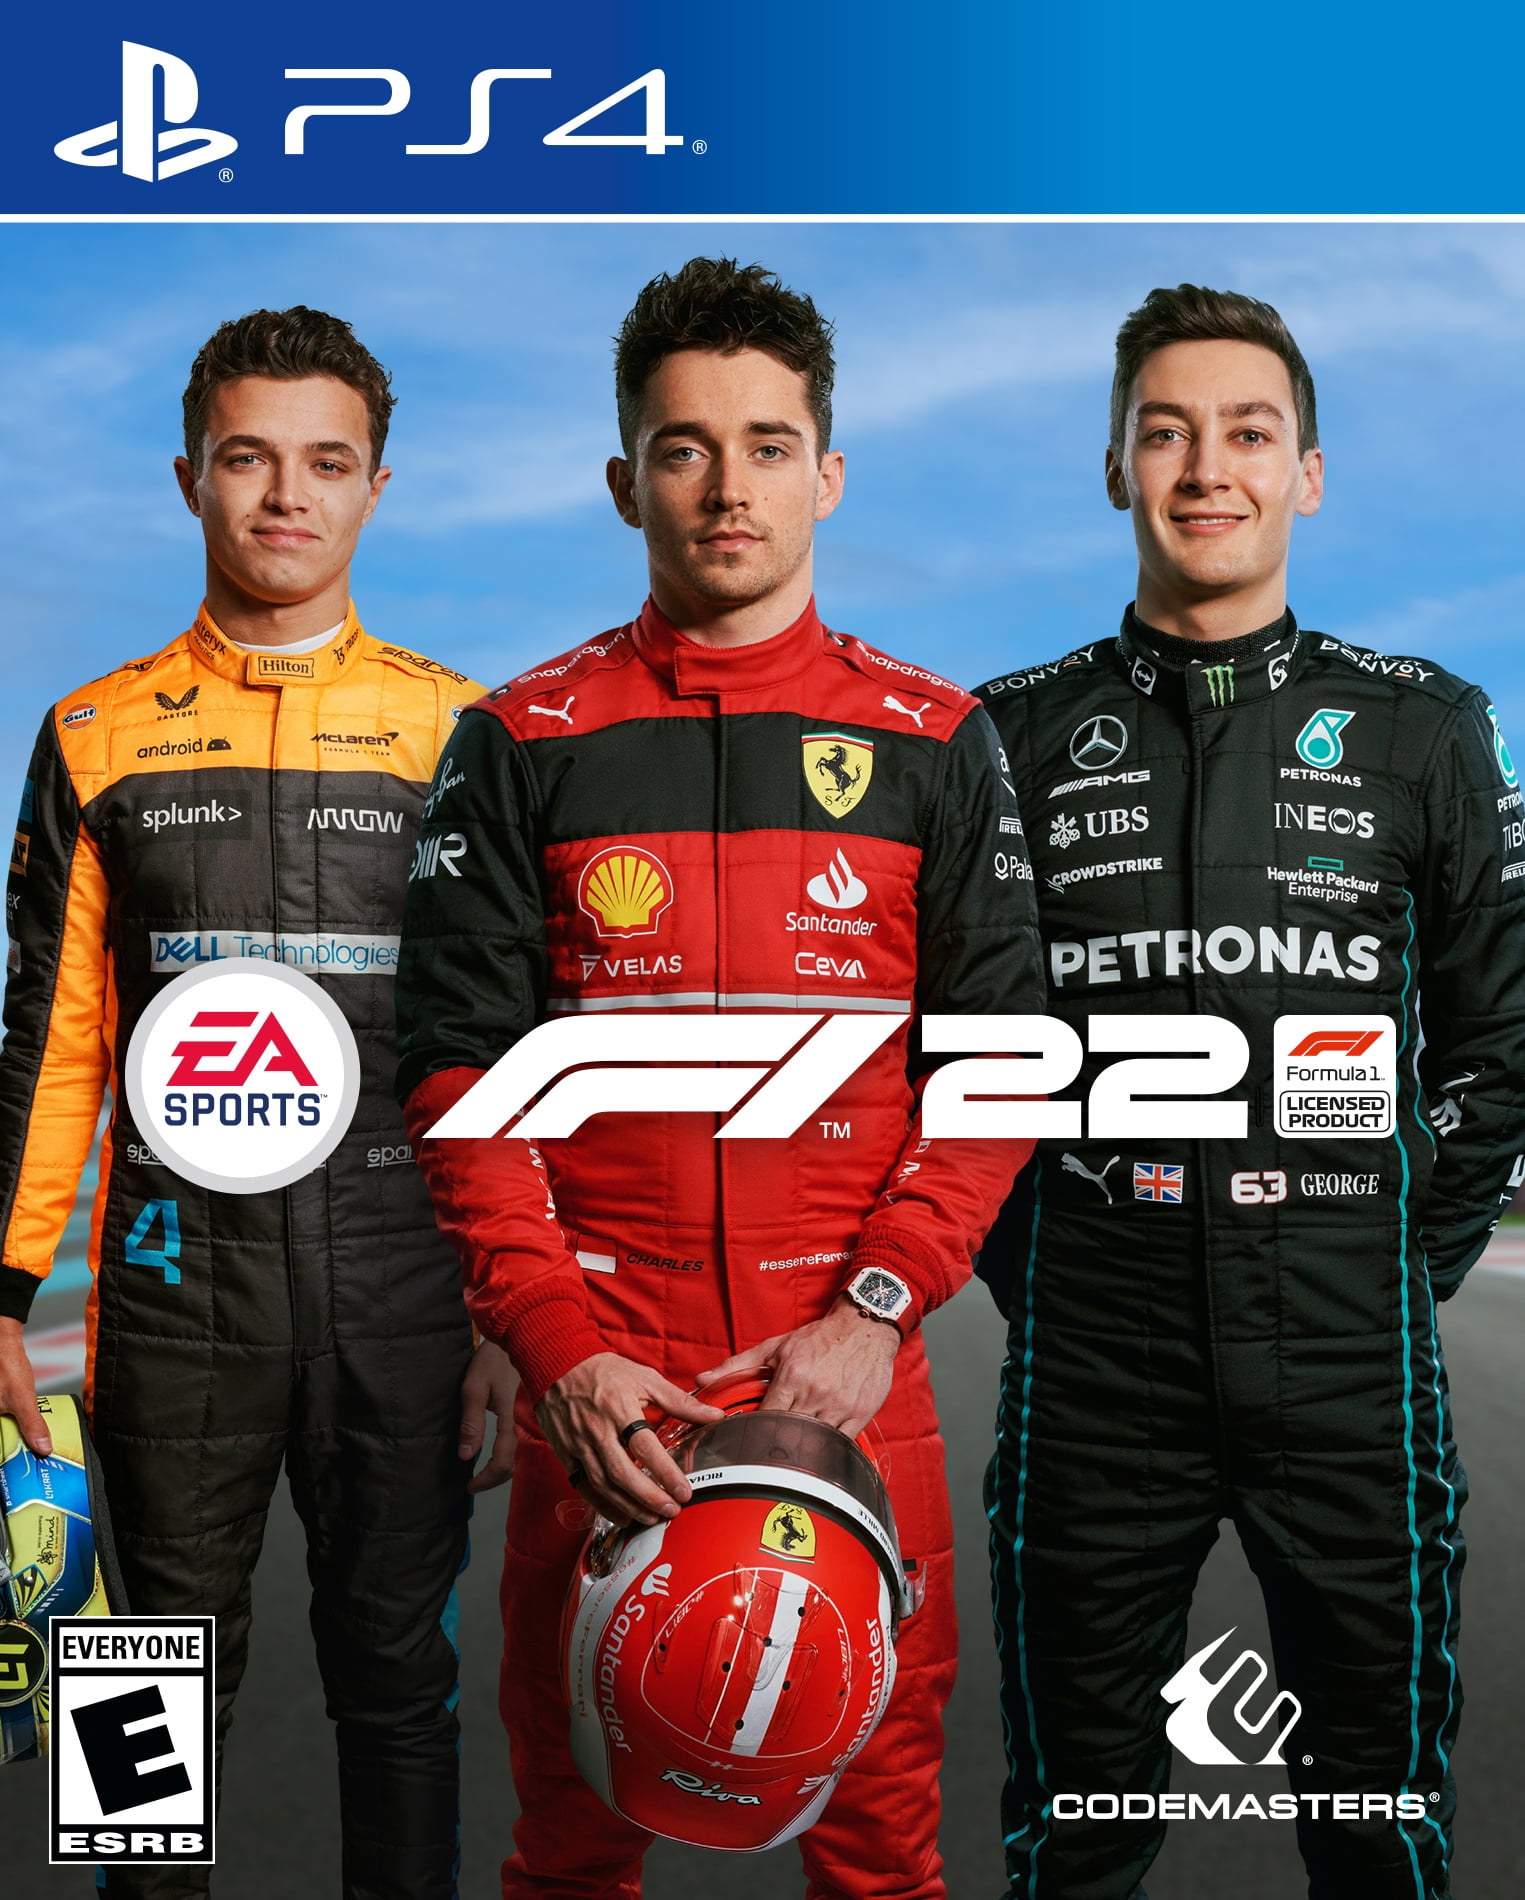 F1 2022 - PlayStation 4